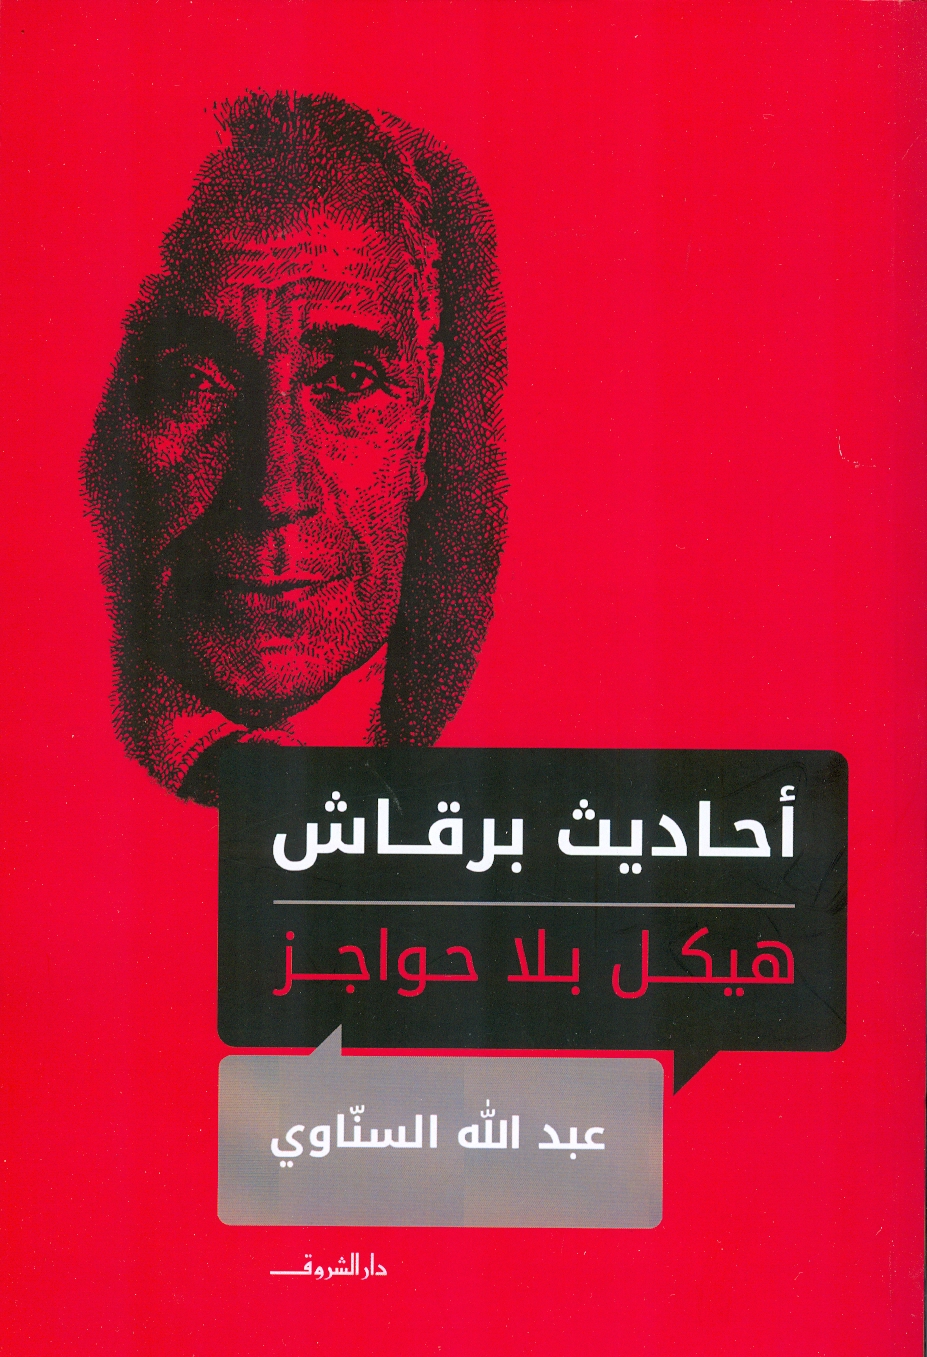 كتاب أحاديث برقاش هيكل بلا حواجز للكاتب عبد الله السناوى